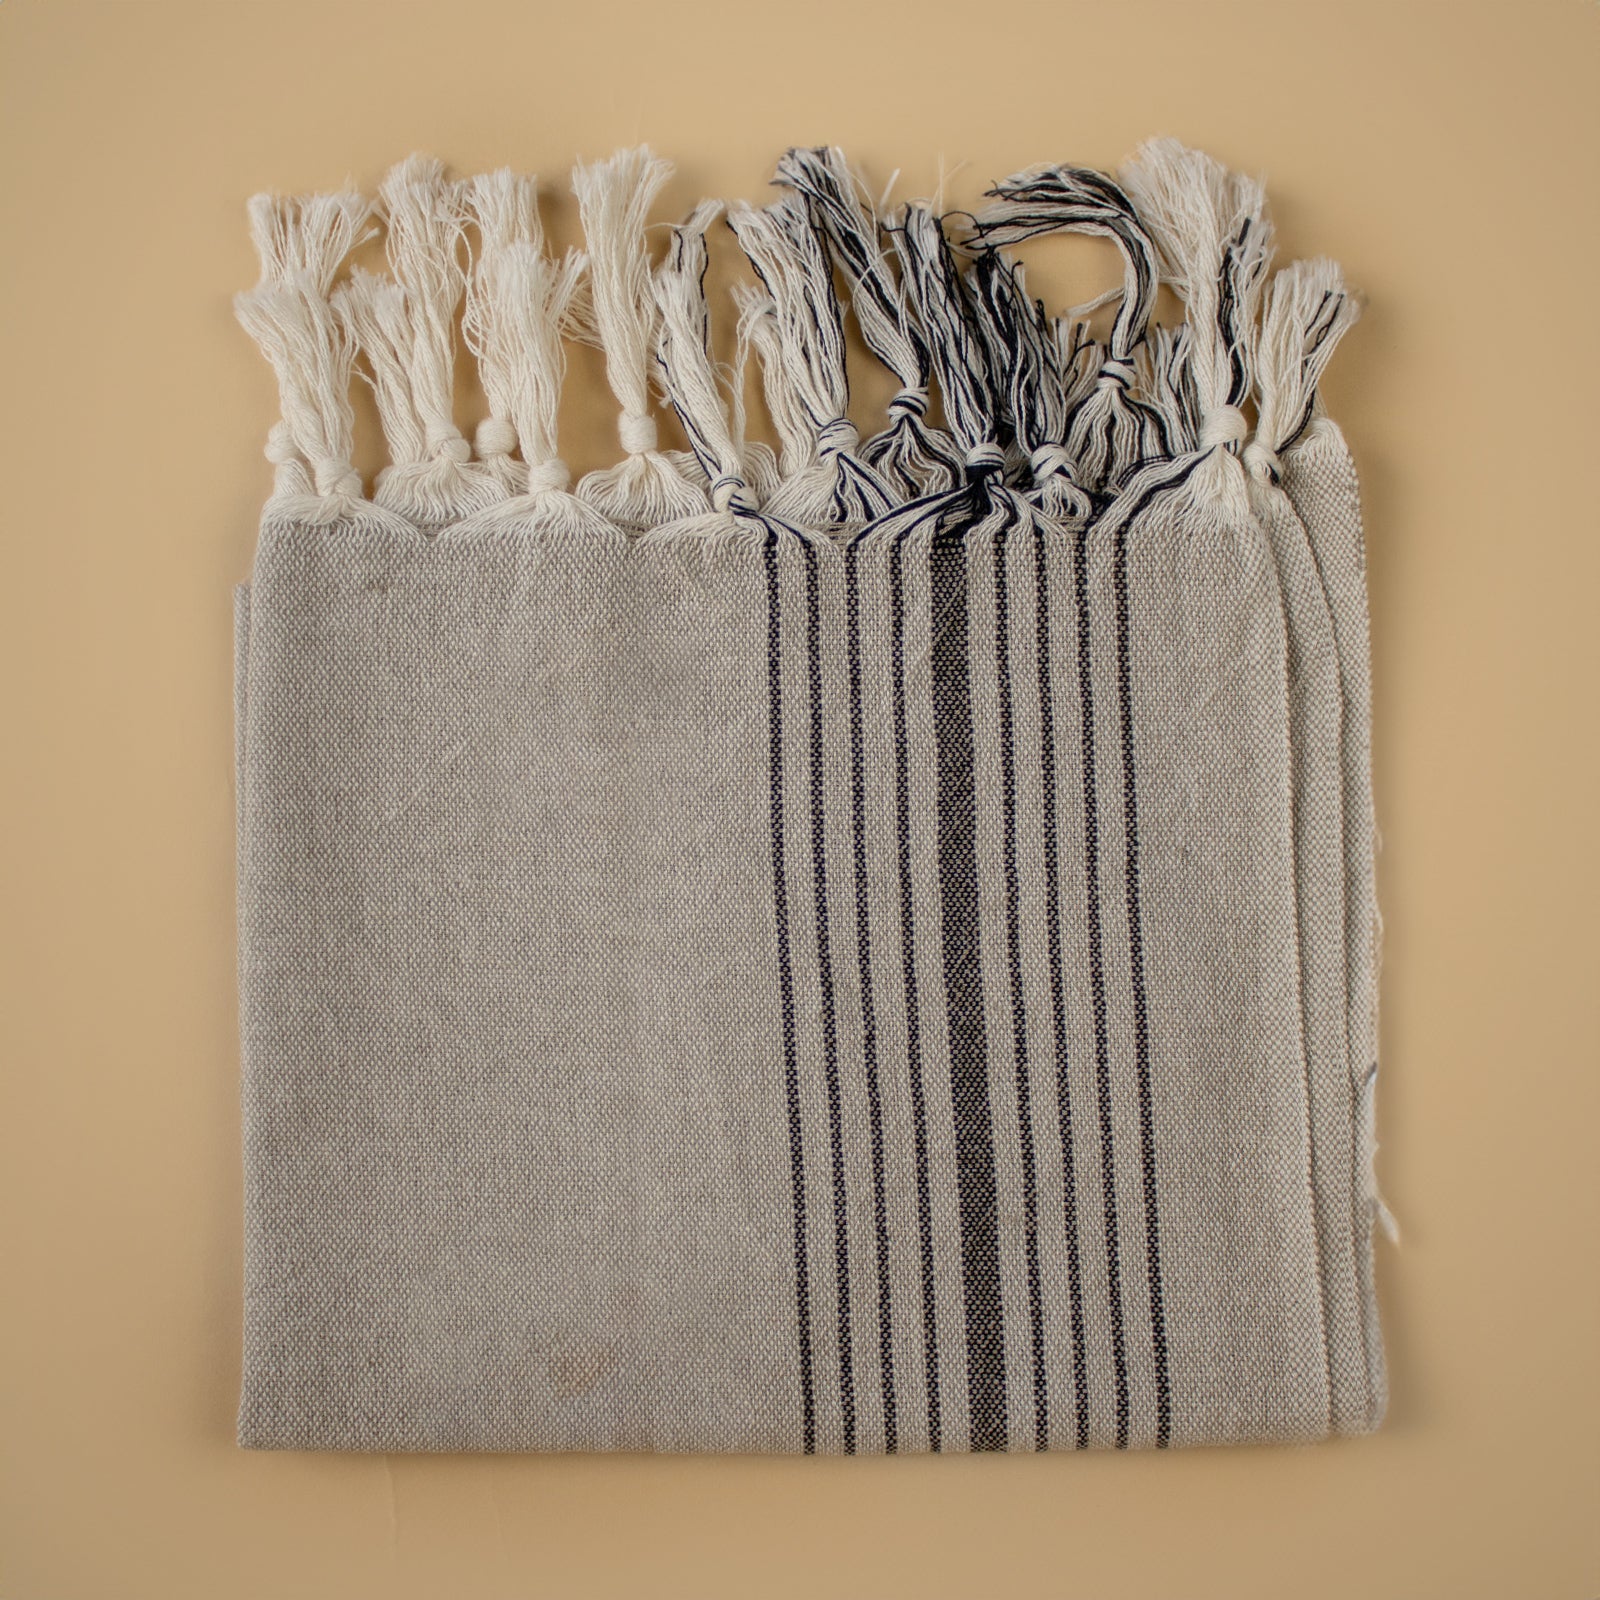 Small Handwoven Hand Towel - Beige